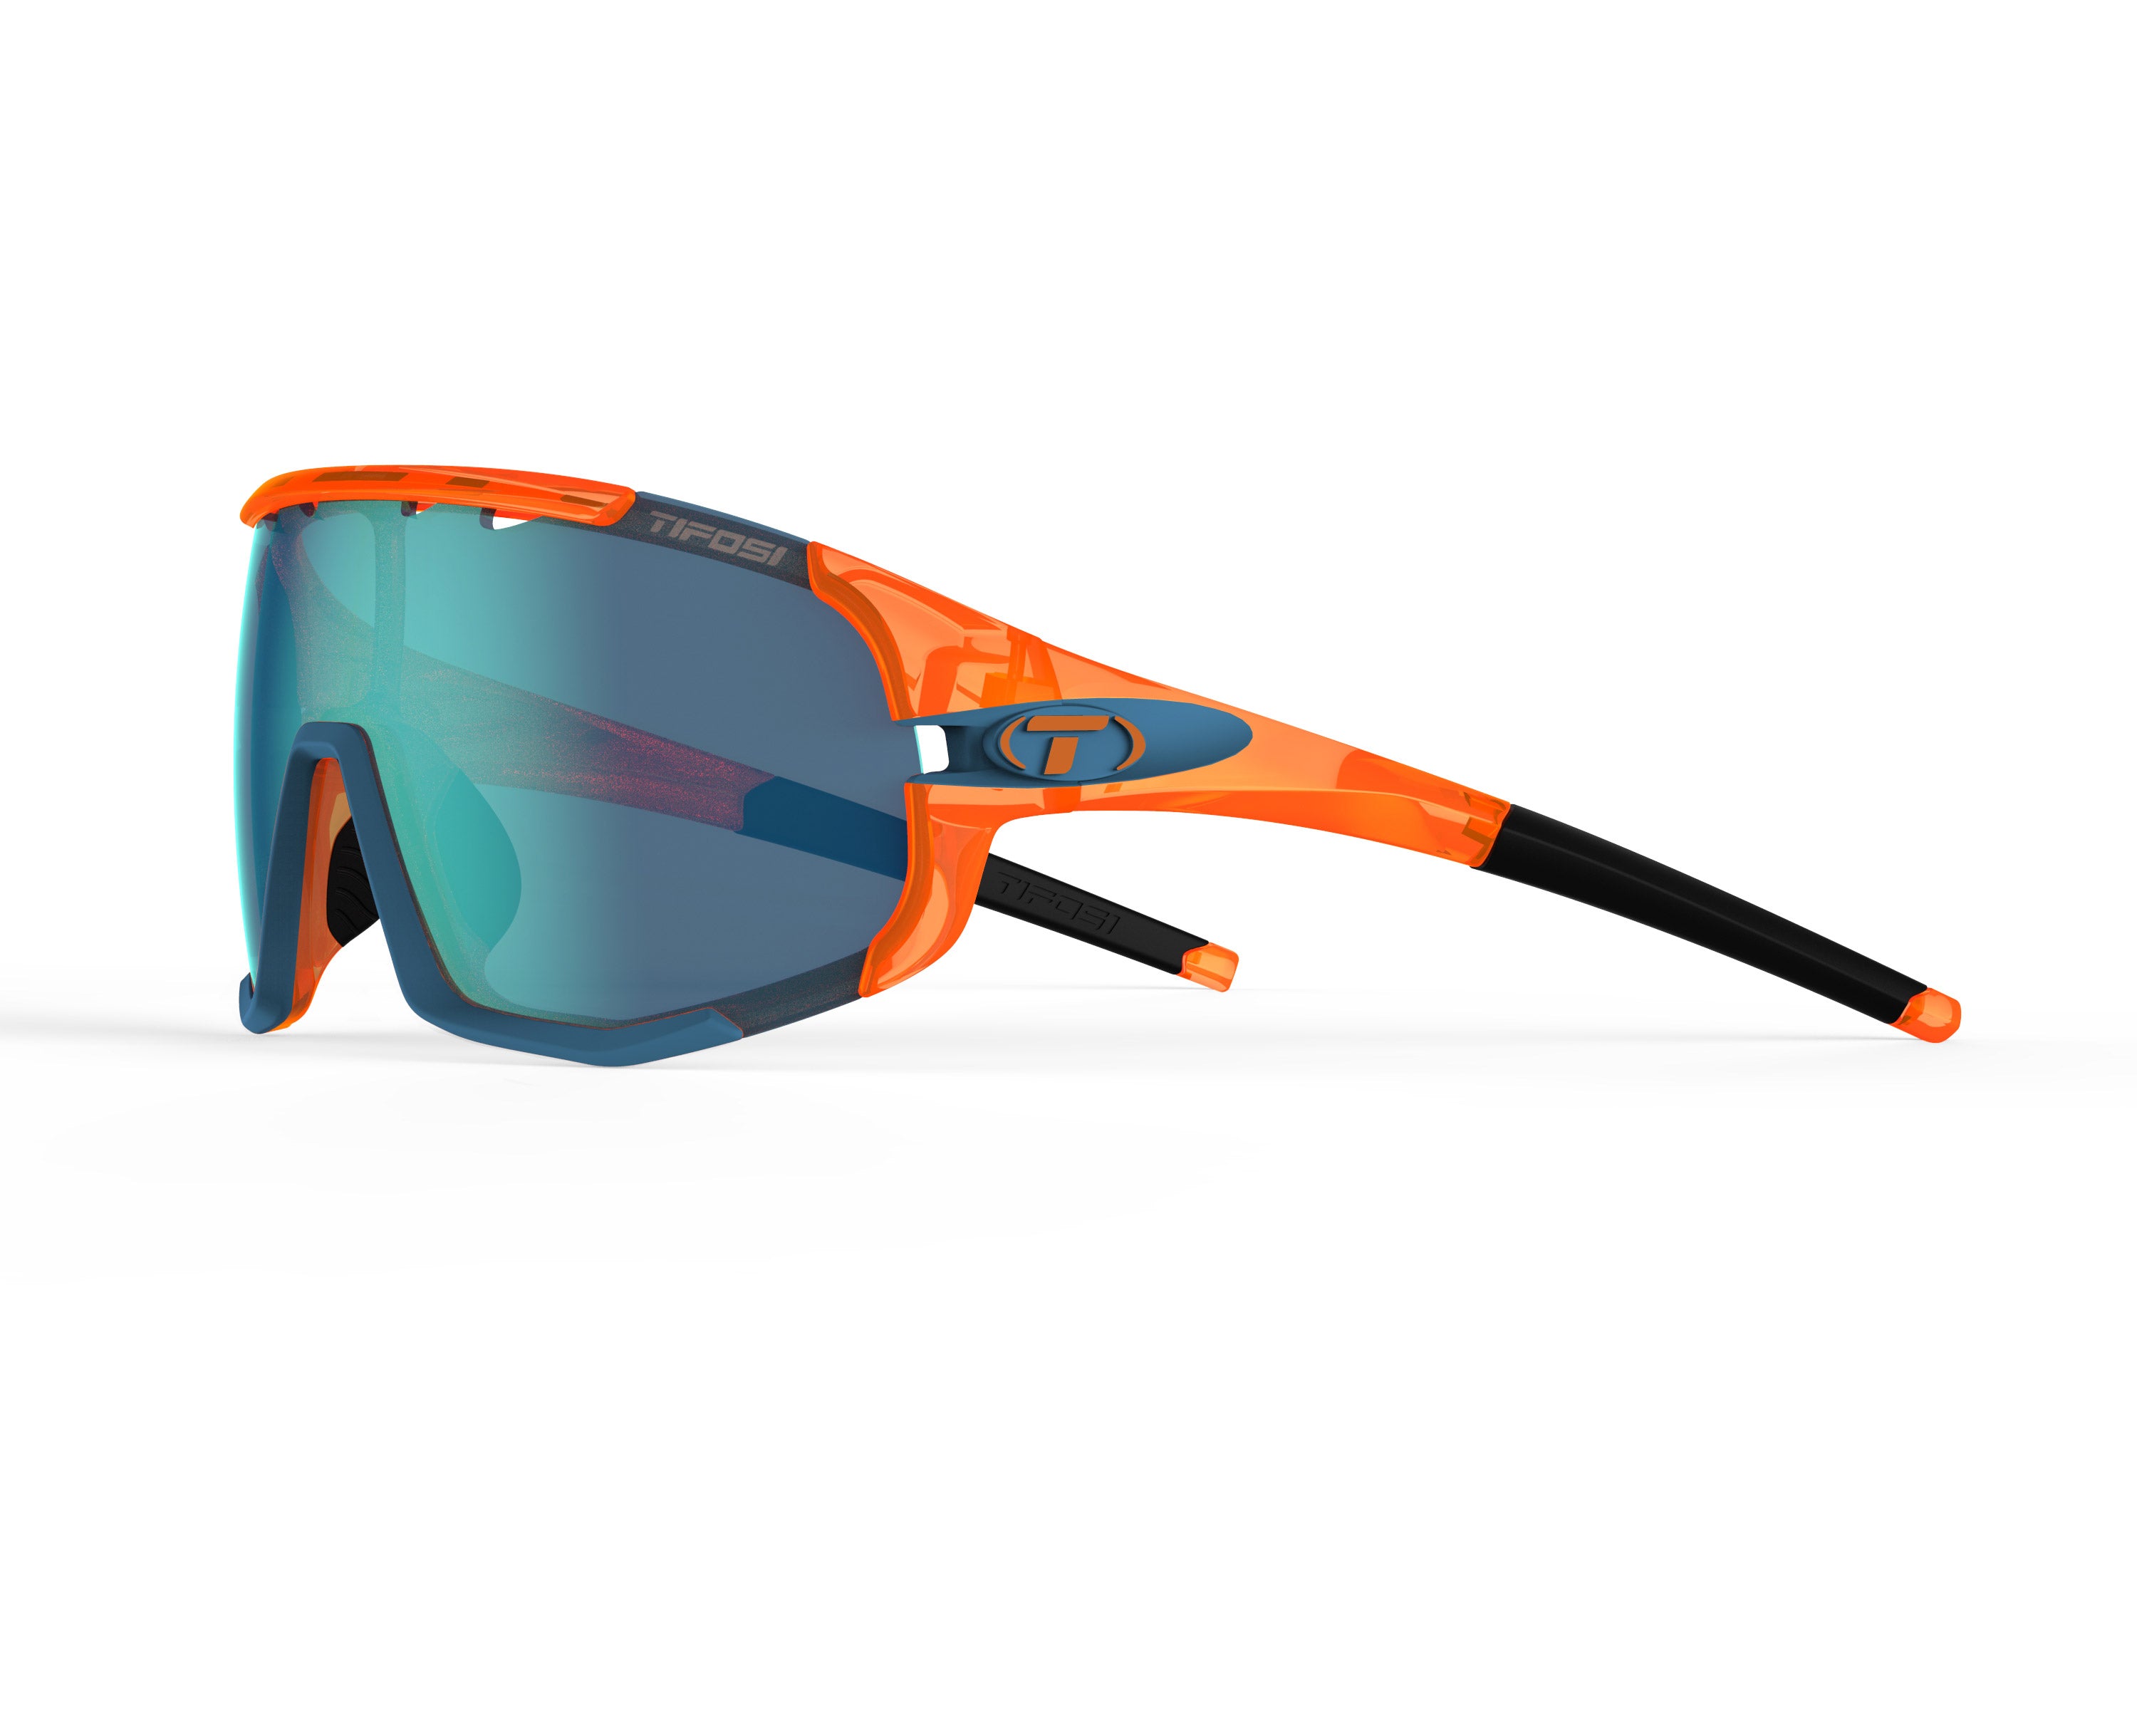 Gafas de sol TIFOSI Sledge Crystal Orange (incluye varias lentes)